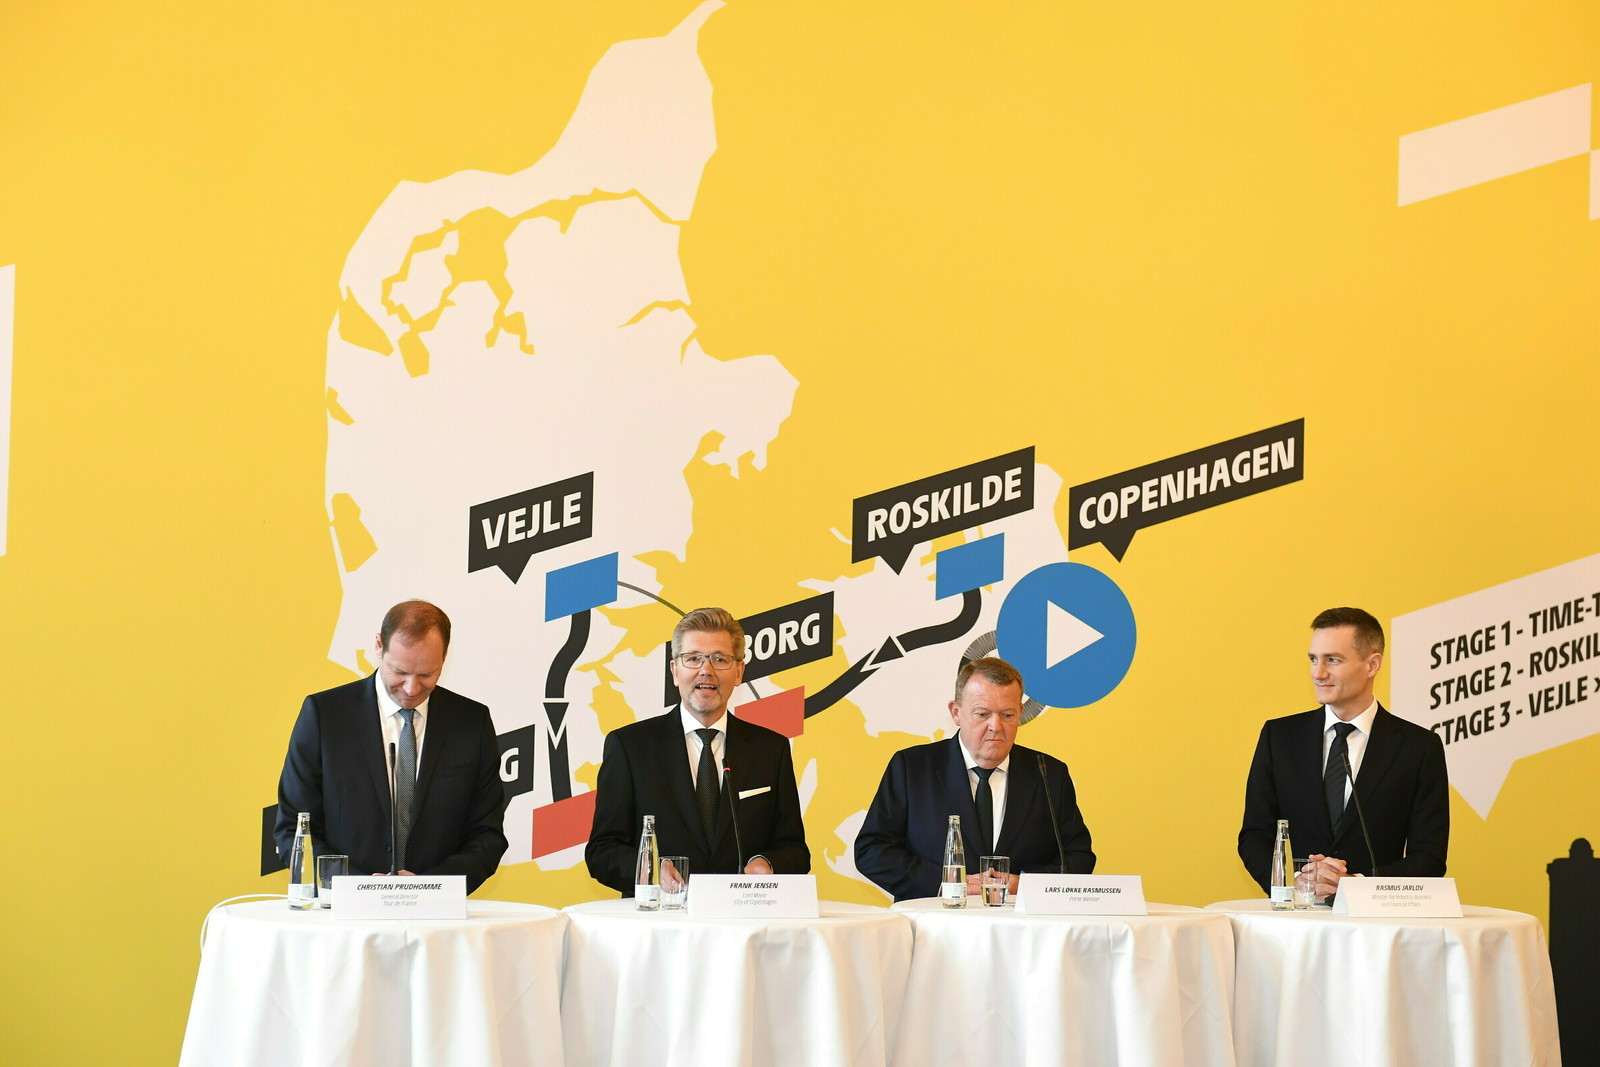 El director del Tour de Francia Christian Prudhomme; el alcalde de Copenhague Frank Jensen; el primer ministro Lars Loekke Rasmussen; y el ministro de Finanzas Rasmus Jarlov durante una rueda de prensa.